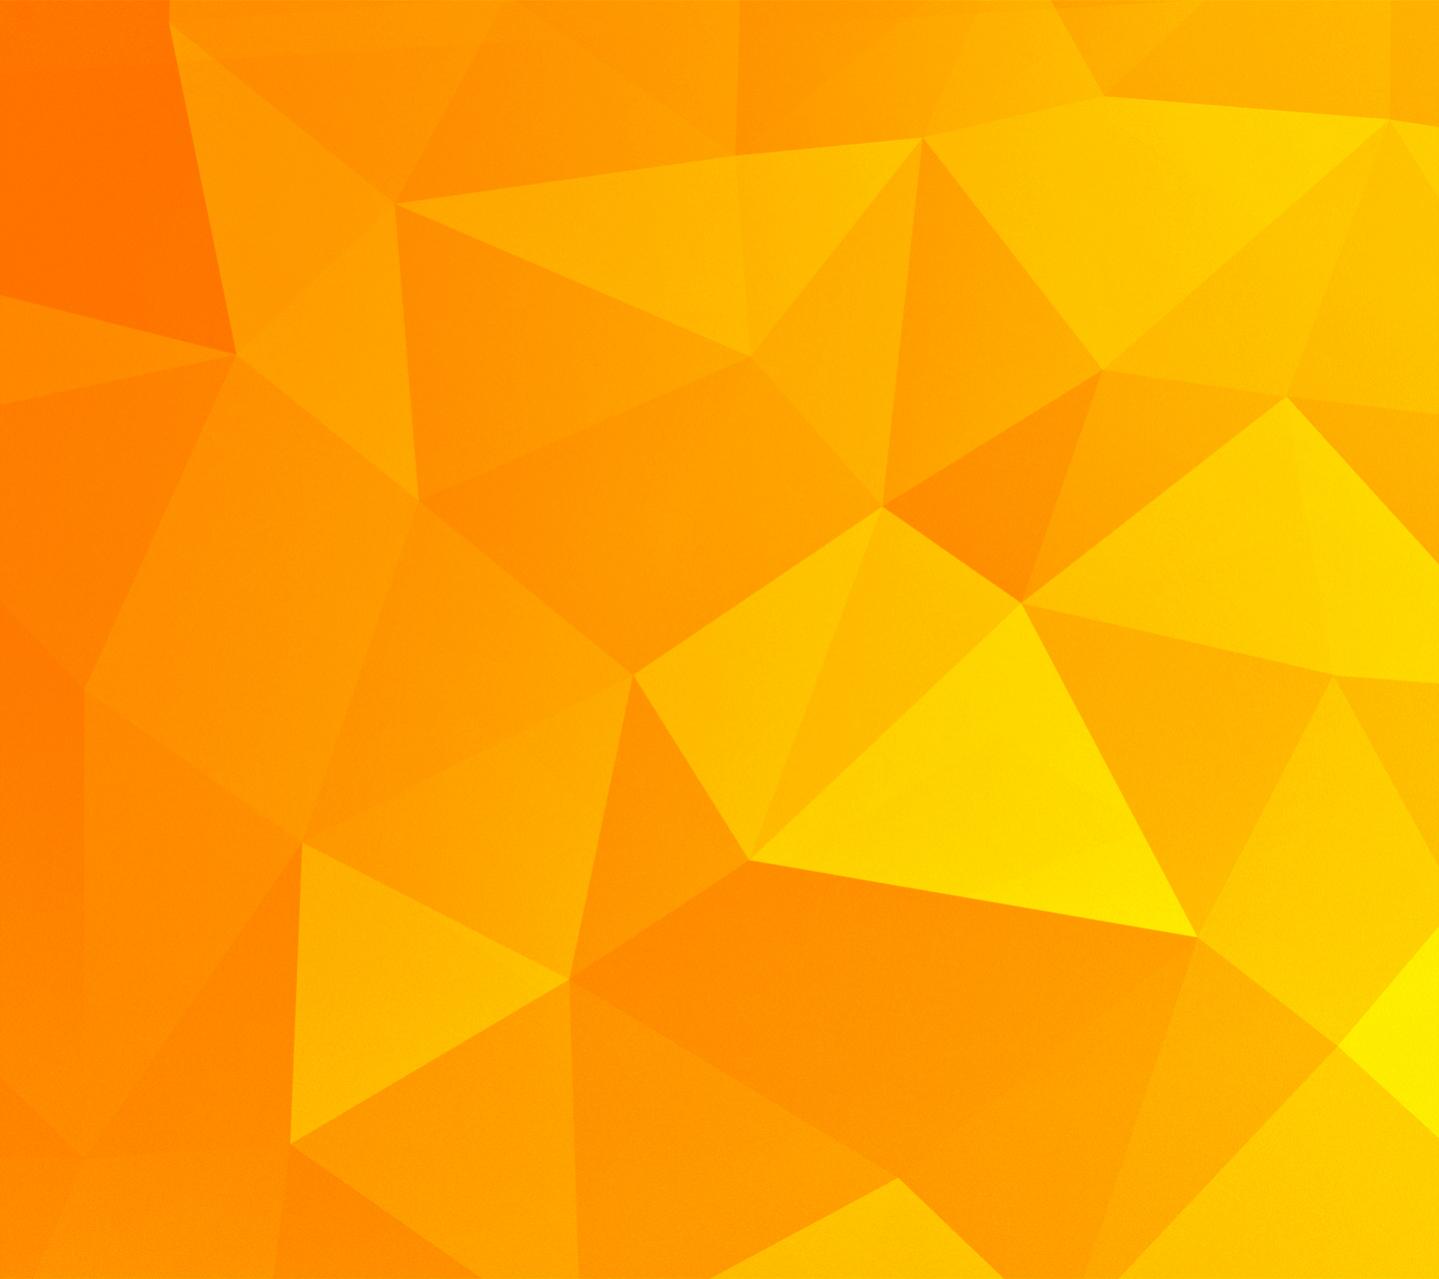 Advertised N4 Wallpaper Is Orange Google Nexus Xda Forums